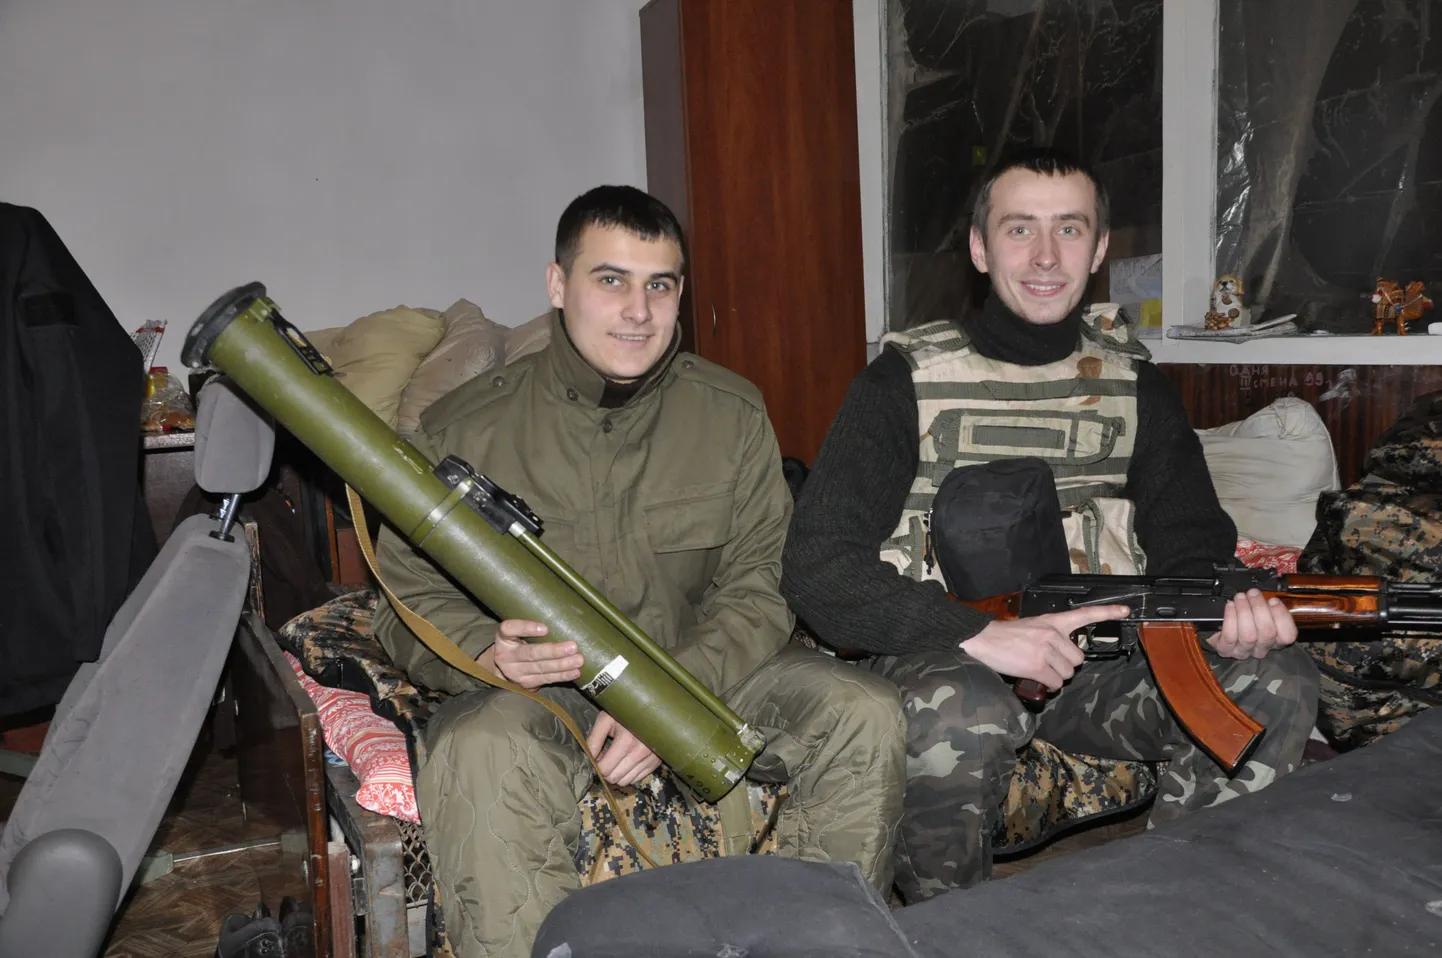 Роман Кулик (слева) - сейчас студент магистратуры Львовского университета- и продавец из Киева Ростислав Ковбуз во времена добровольной службы в 2015 году.